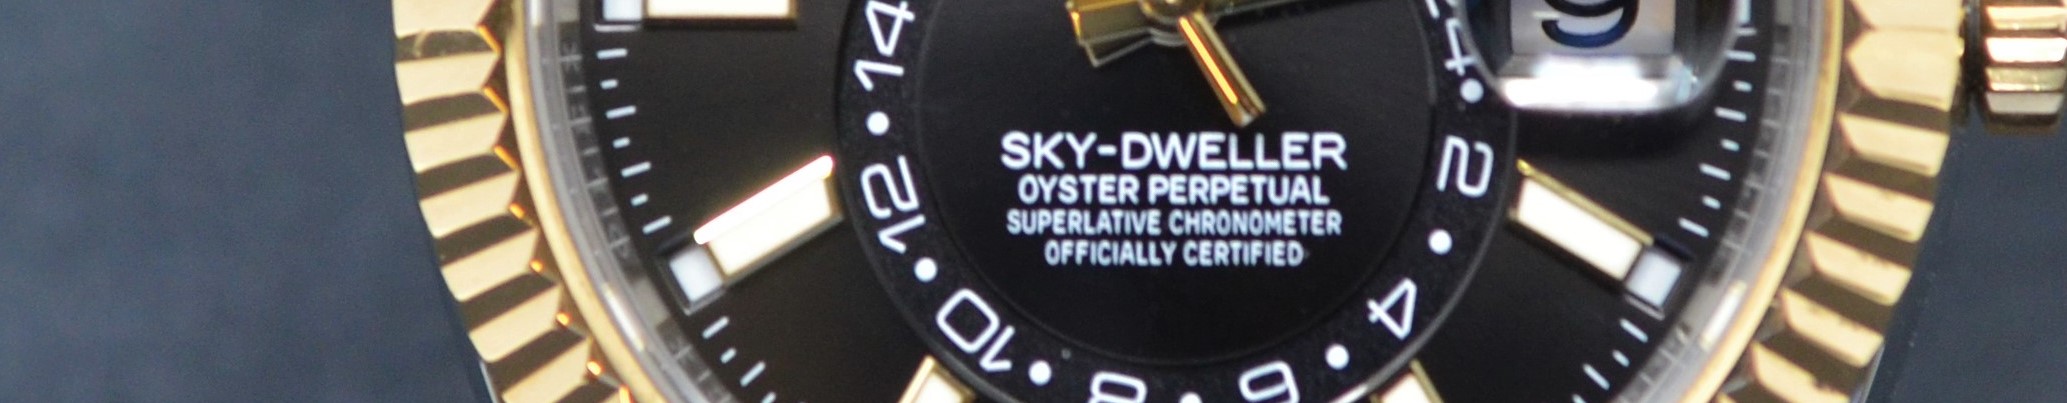 Rolex Sky-Dweller Features 